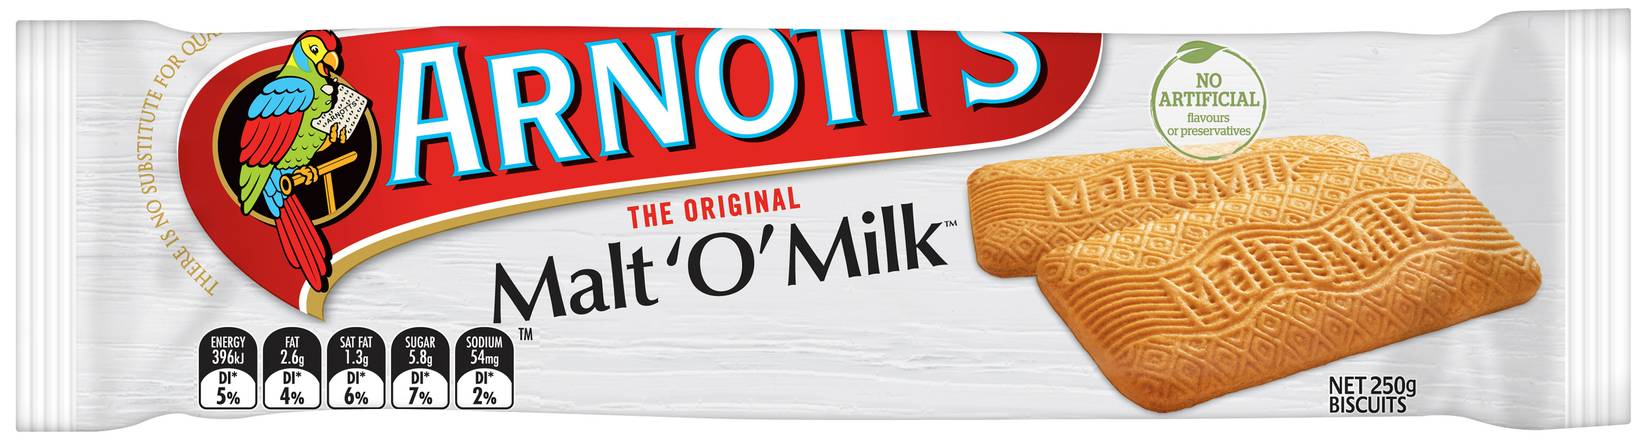 Arnott's Malt-O-Milk Biscuits 250g